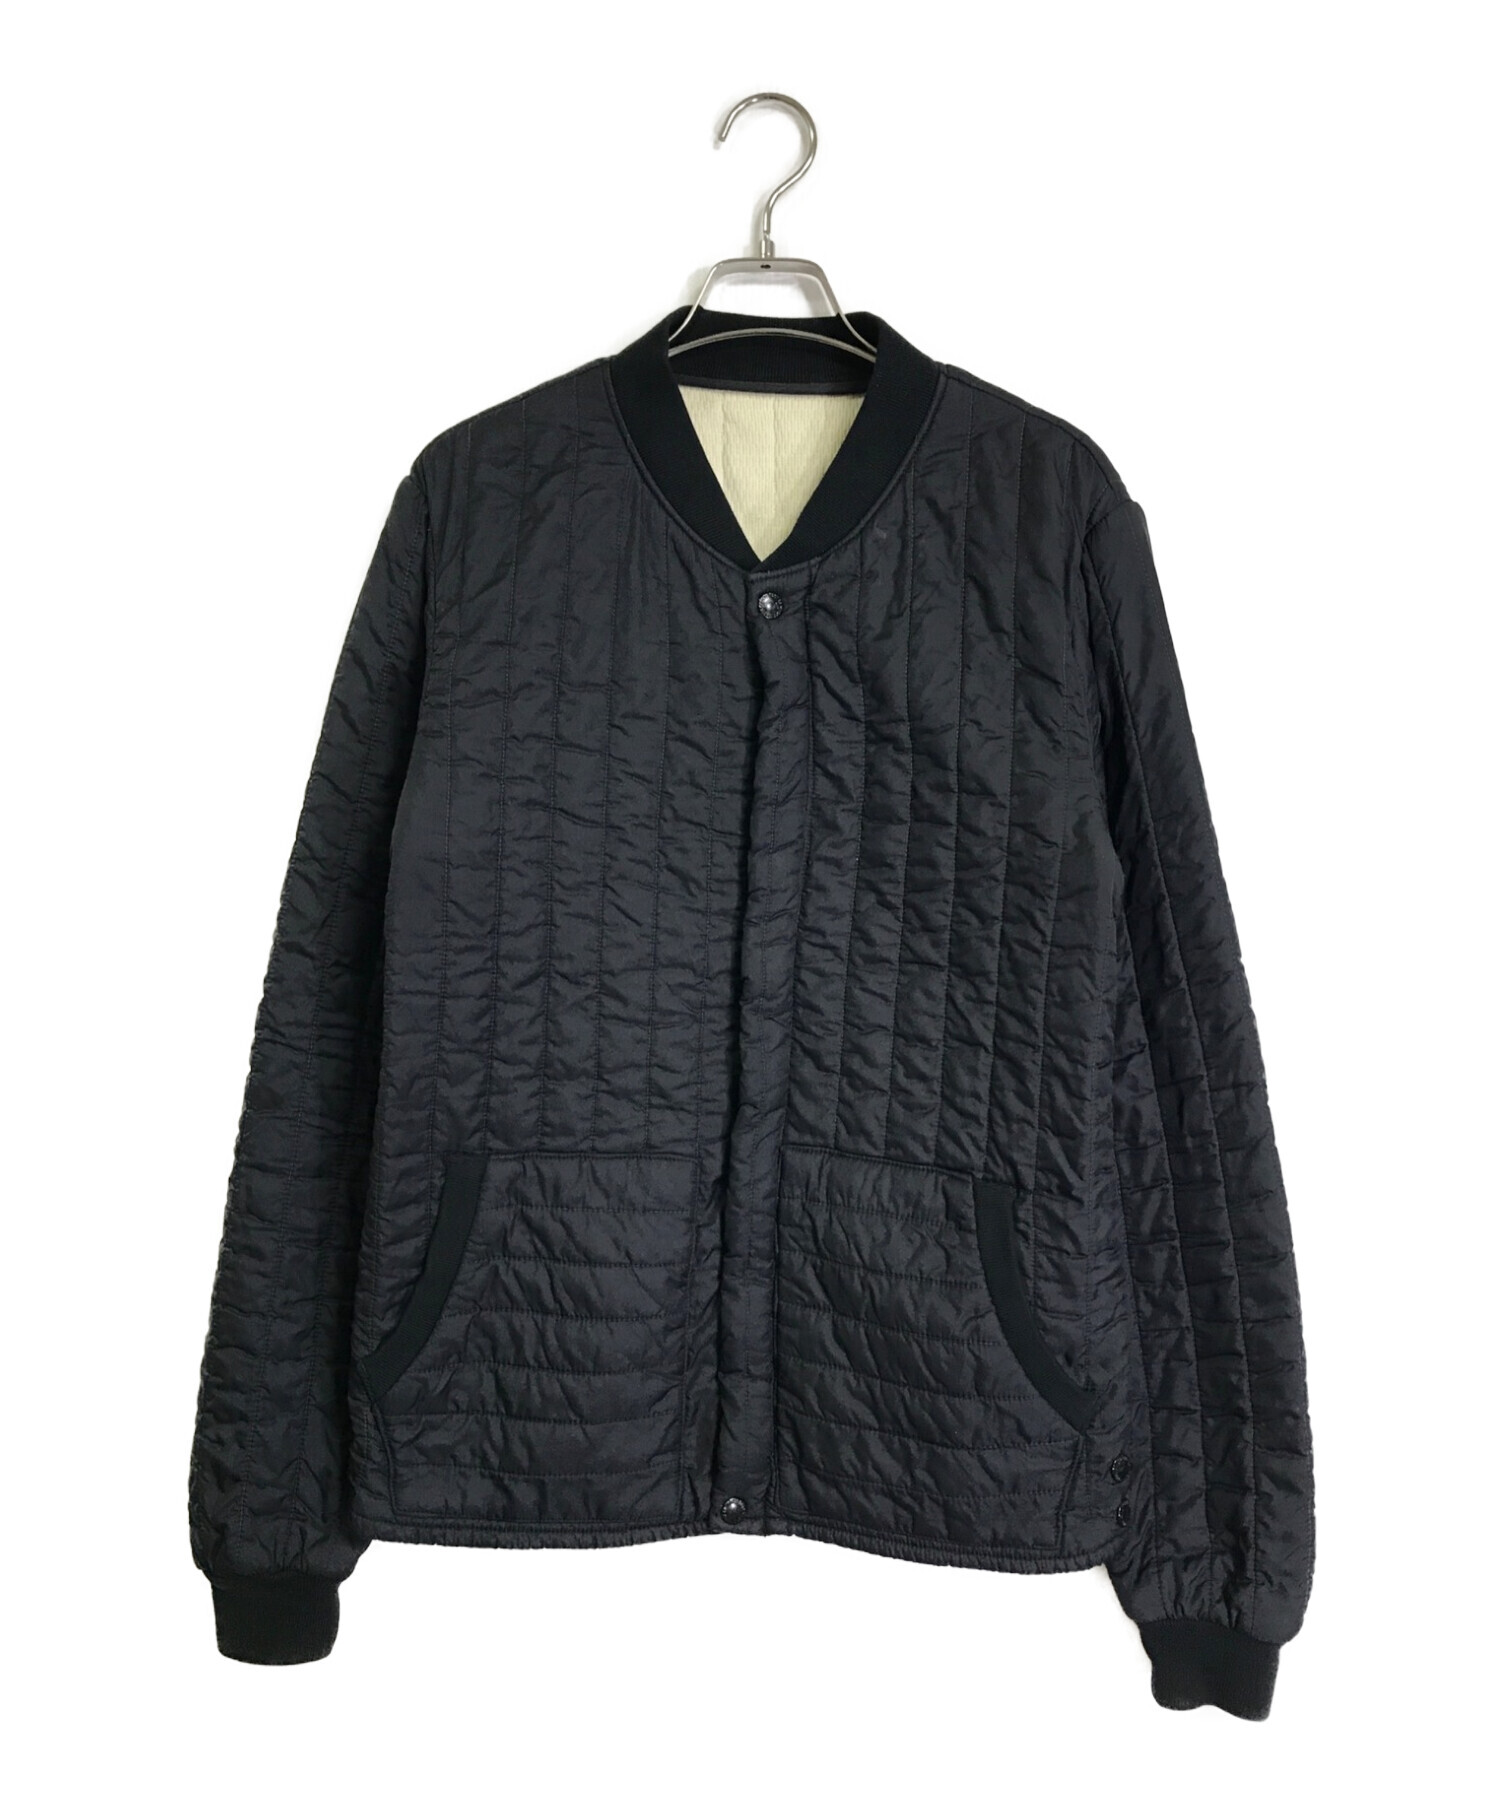 WACKO MARIA (ワコマリア) ブルゾン / キルティングジャケット ブラック サイズ:M